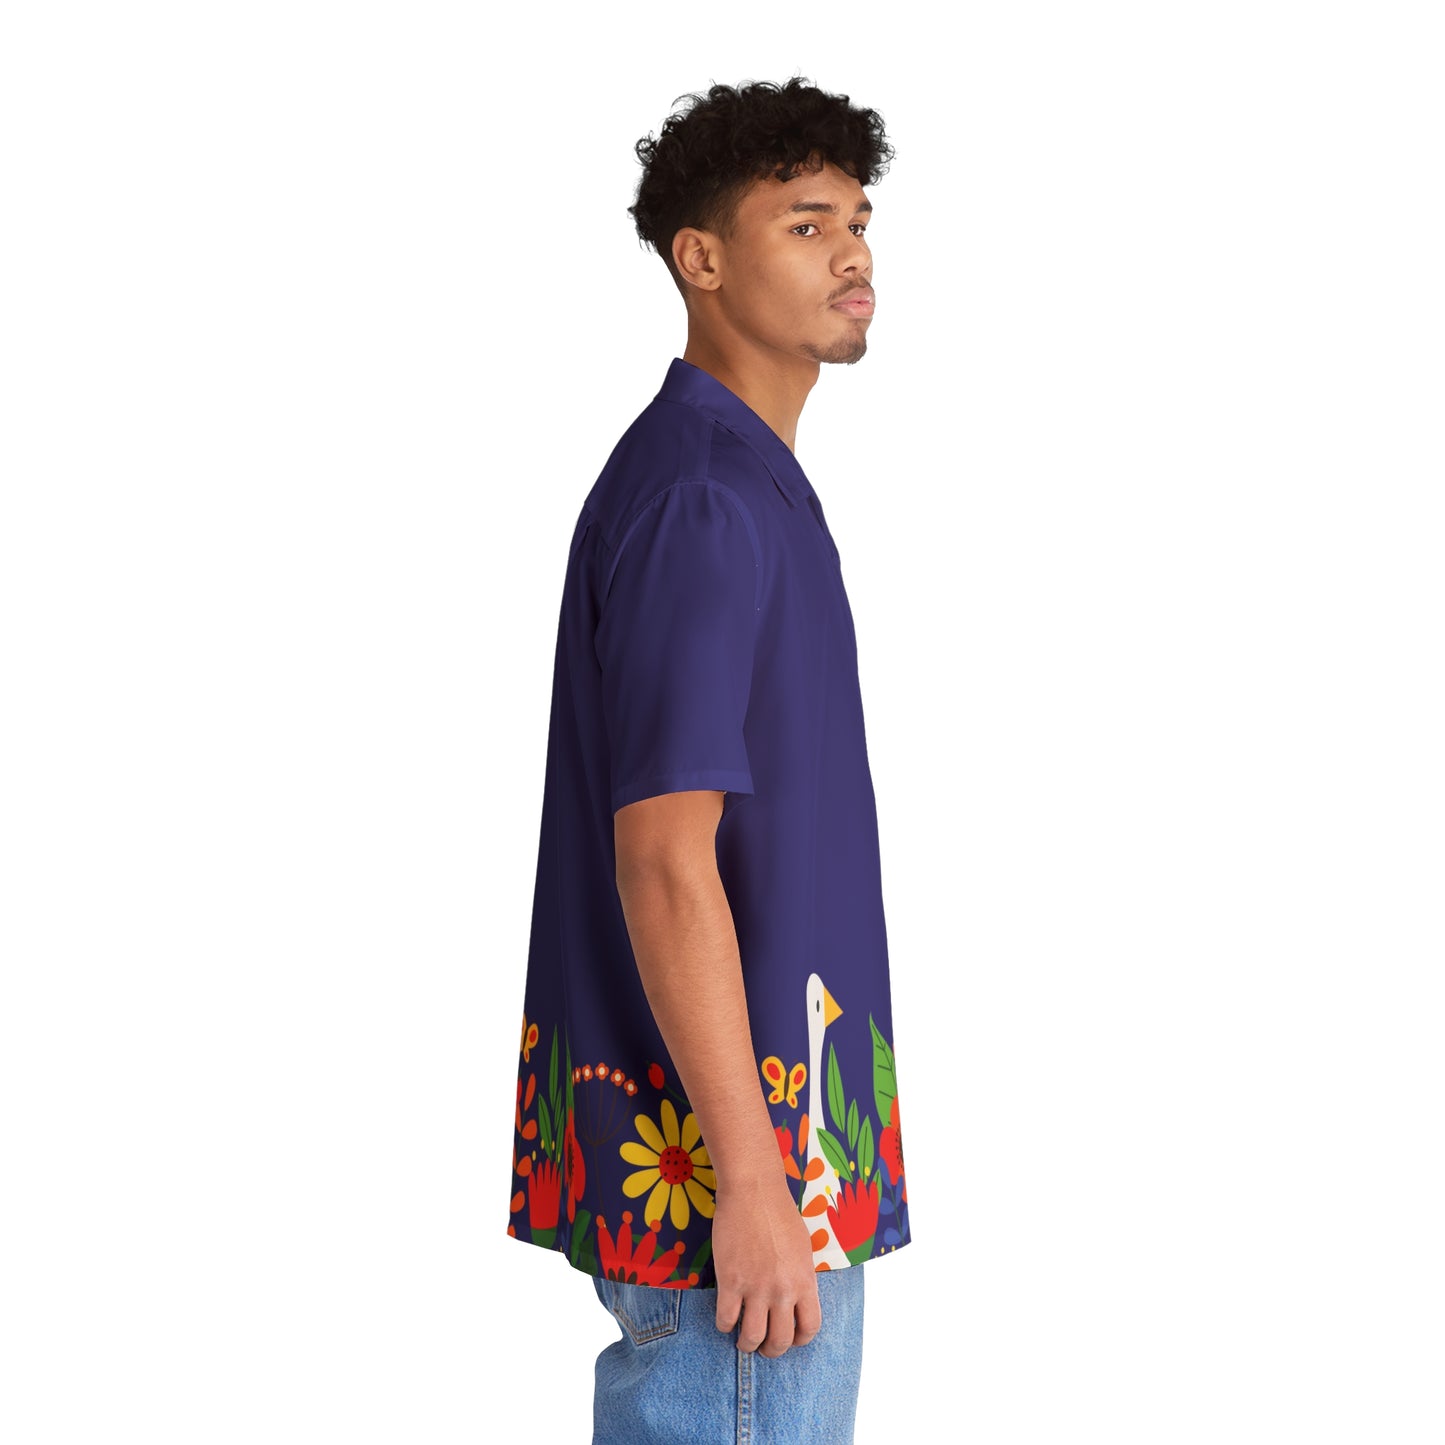 Bright Summer flowers - Ultramarine 160987 - Men's Hawaiian Shirt